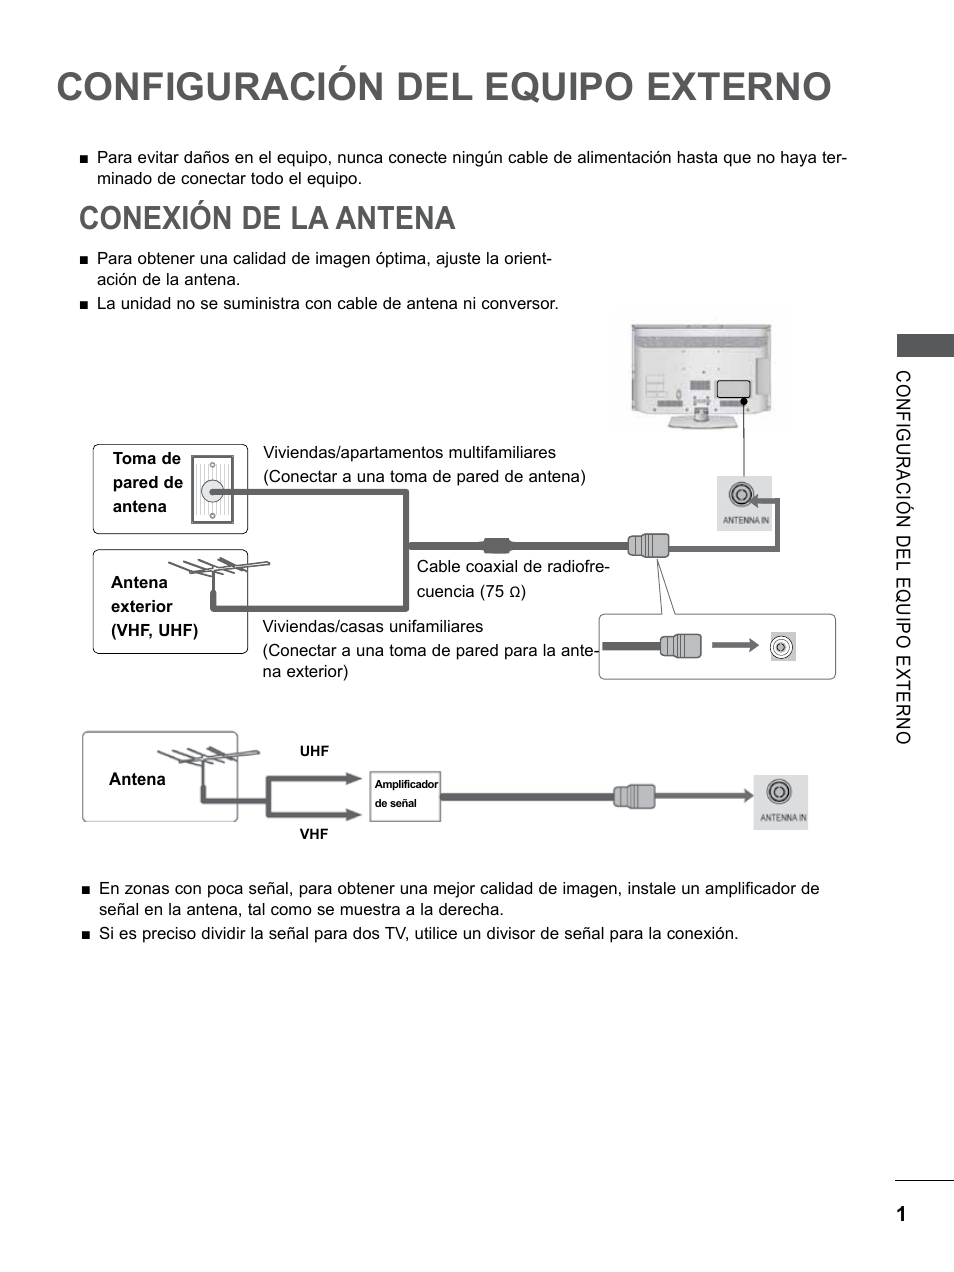 Configuración del equipo externo, Conexión de la antena, Configuración del equipo | Externo | LG 26LD350 Manual del usuario | Página 49 / 206